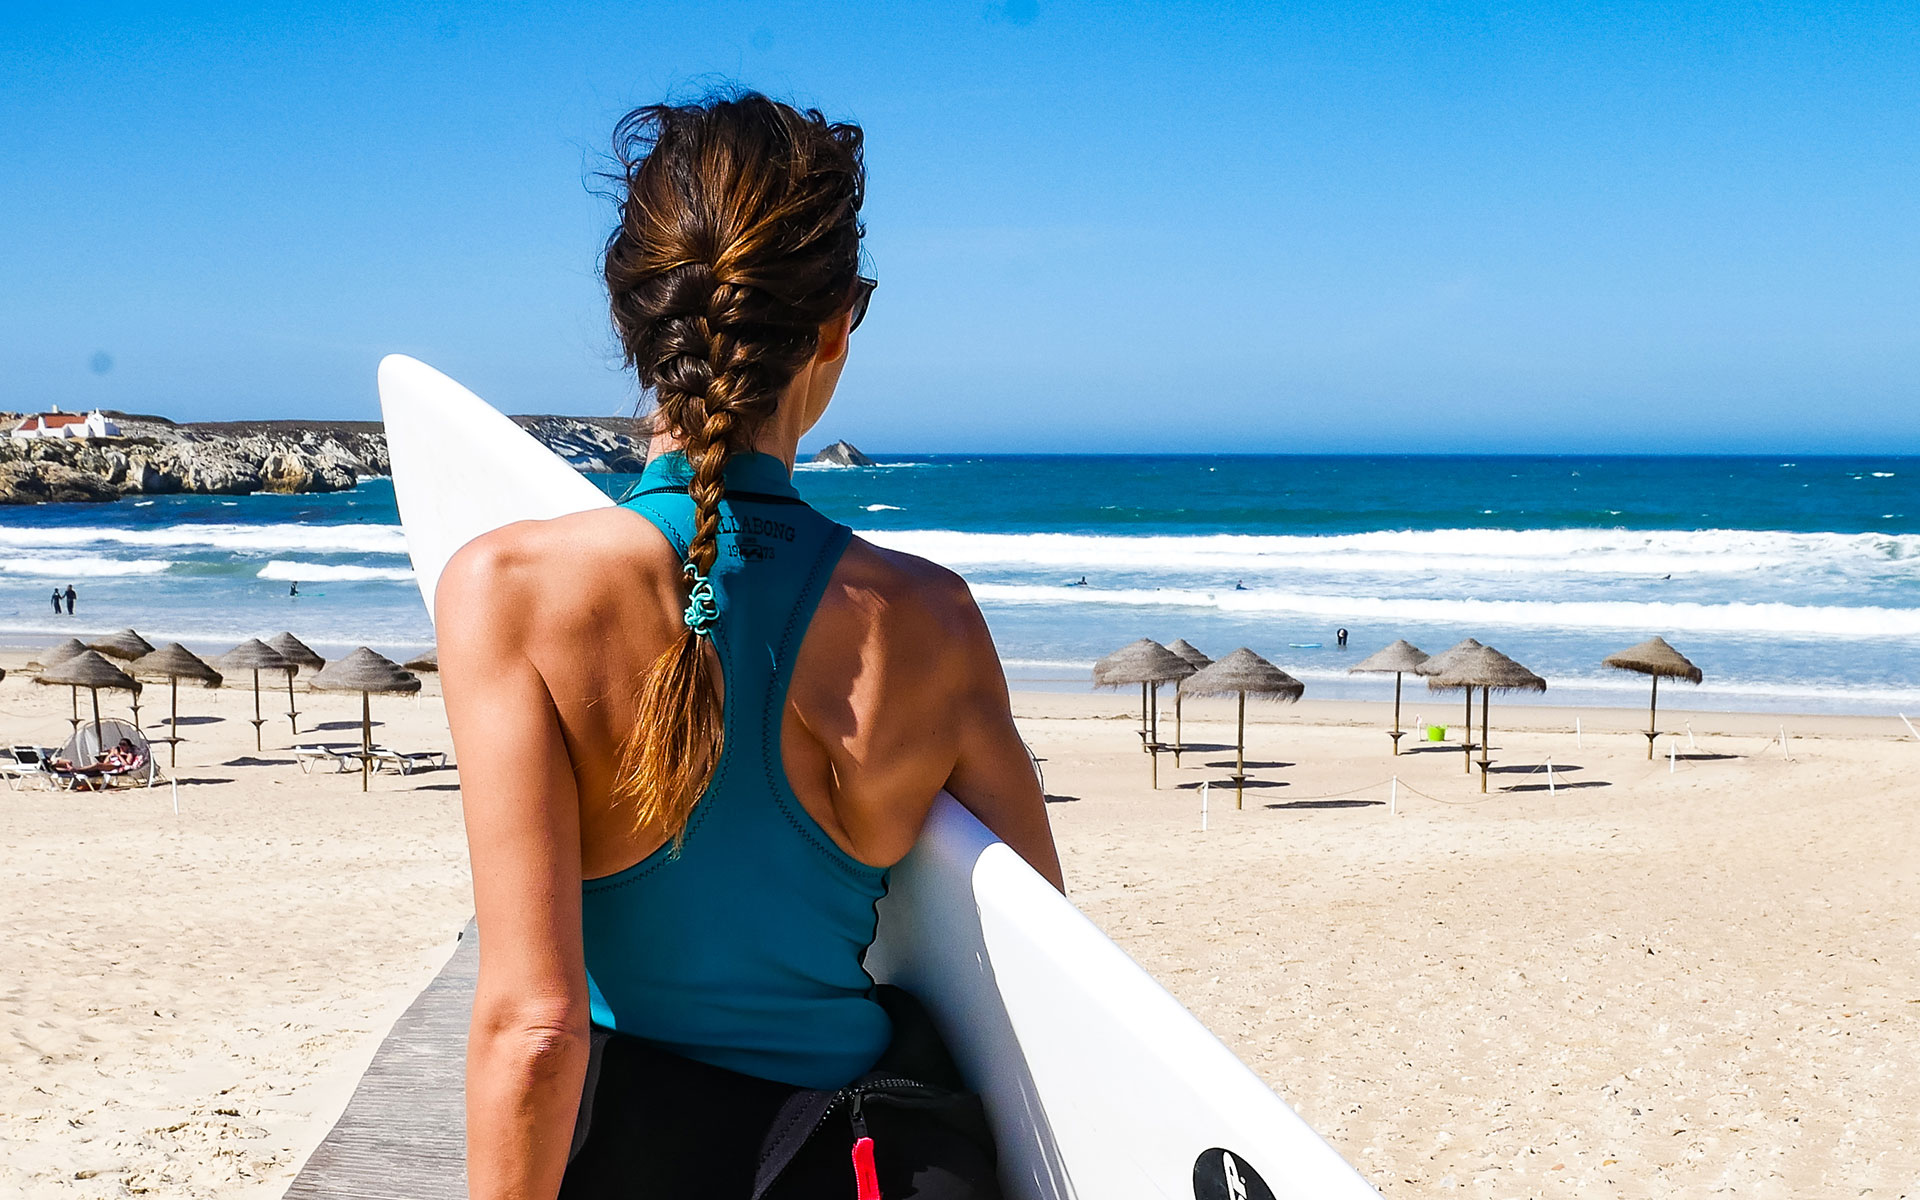 Bloggerin Anja Knorr mit dem Surfbrett unter dem Arm auf dem Weg zum Strand von Peniche in Portugal, wo hohe Wellen auf sie warten.